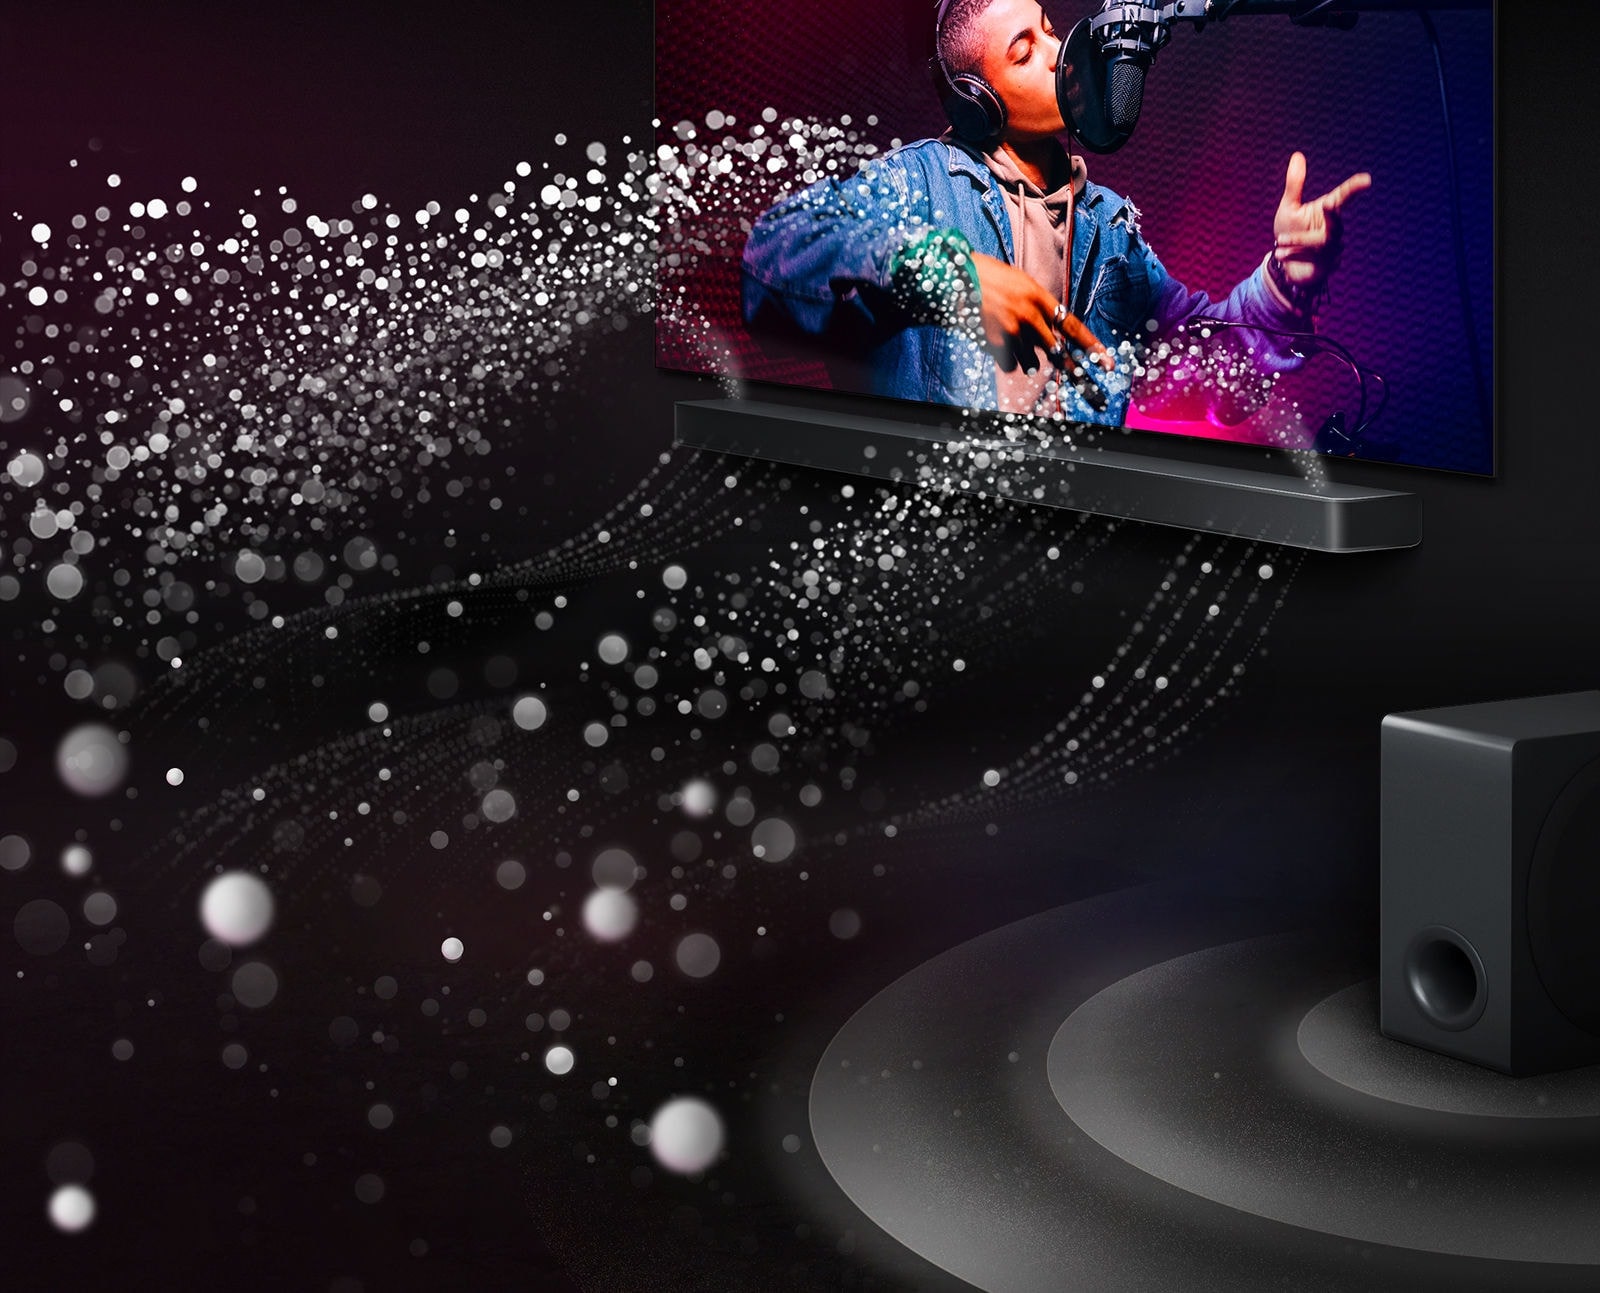 LG TV und LG Soundbar in einem schwarzen Raum bei der Wiedergabe einer Musikaufführung. Weiße Tröpfchen, die Schallwellen darstellen, schießen von der Soundbar nach oben und nach vorne. Ein Subwoofer erzeugt einen Klangeffekt von unten.